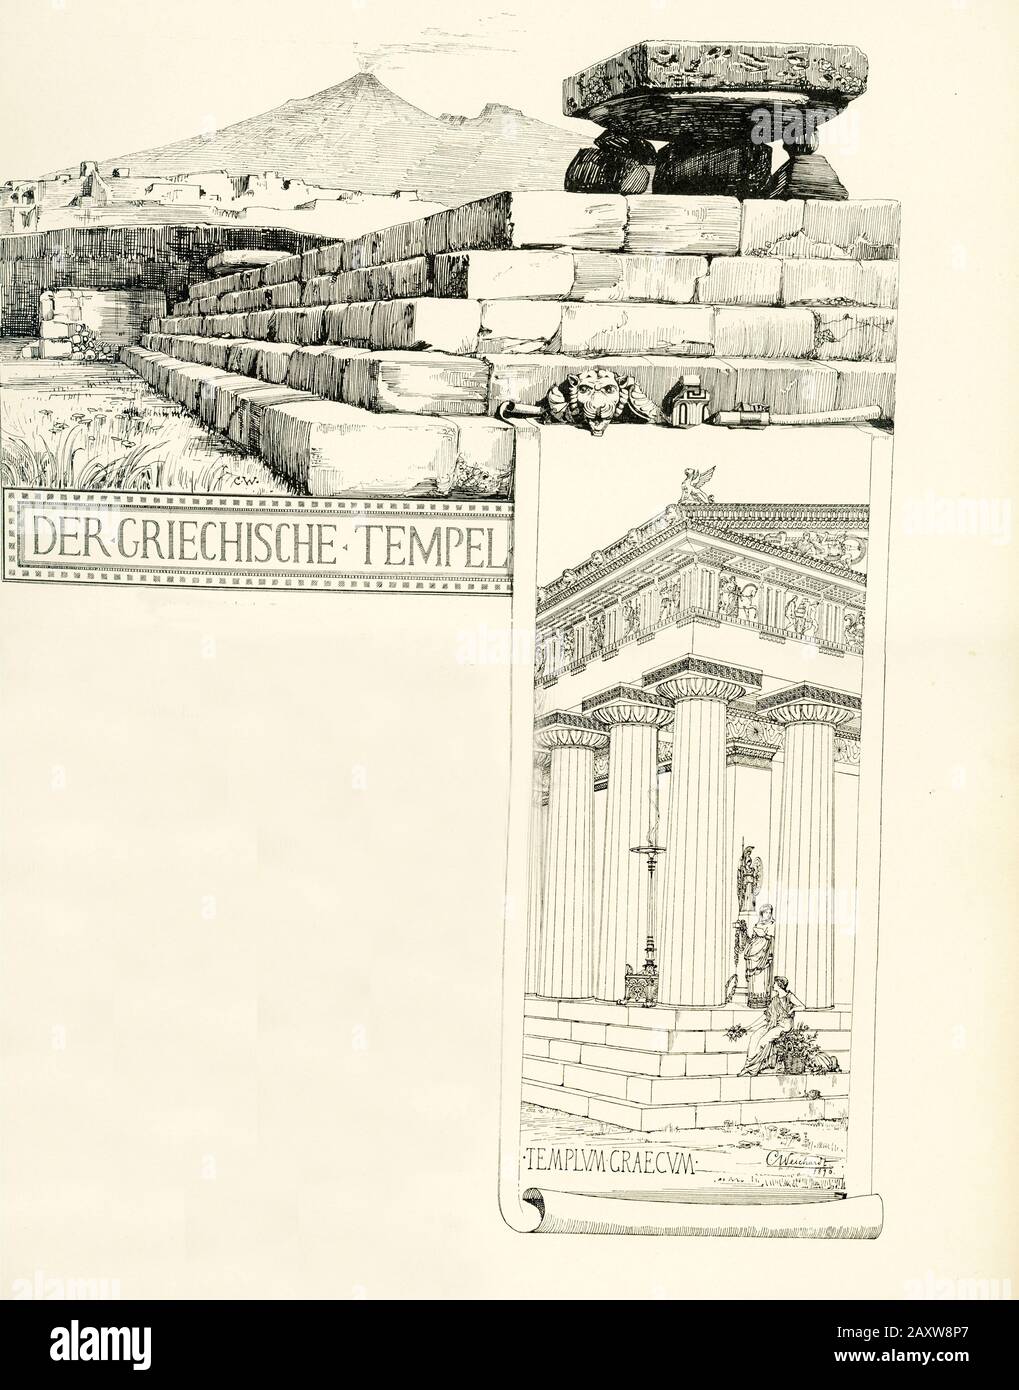 Diese Illustration stammte von Karl Weichardt (1848-1906), einem deutschen Architekten und Architekturmaler. Es zeigt einen antiken griechischen Tempel in Pompeji, der römischen Stadt, die 79 n. Chr. beim Ausbruch des Vesuvs zerstört wurde. Stockfoto